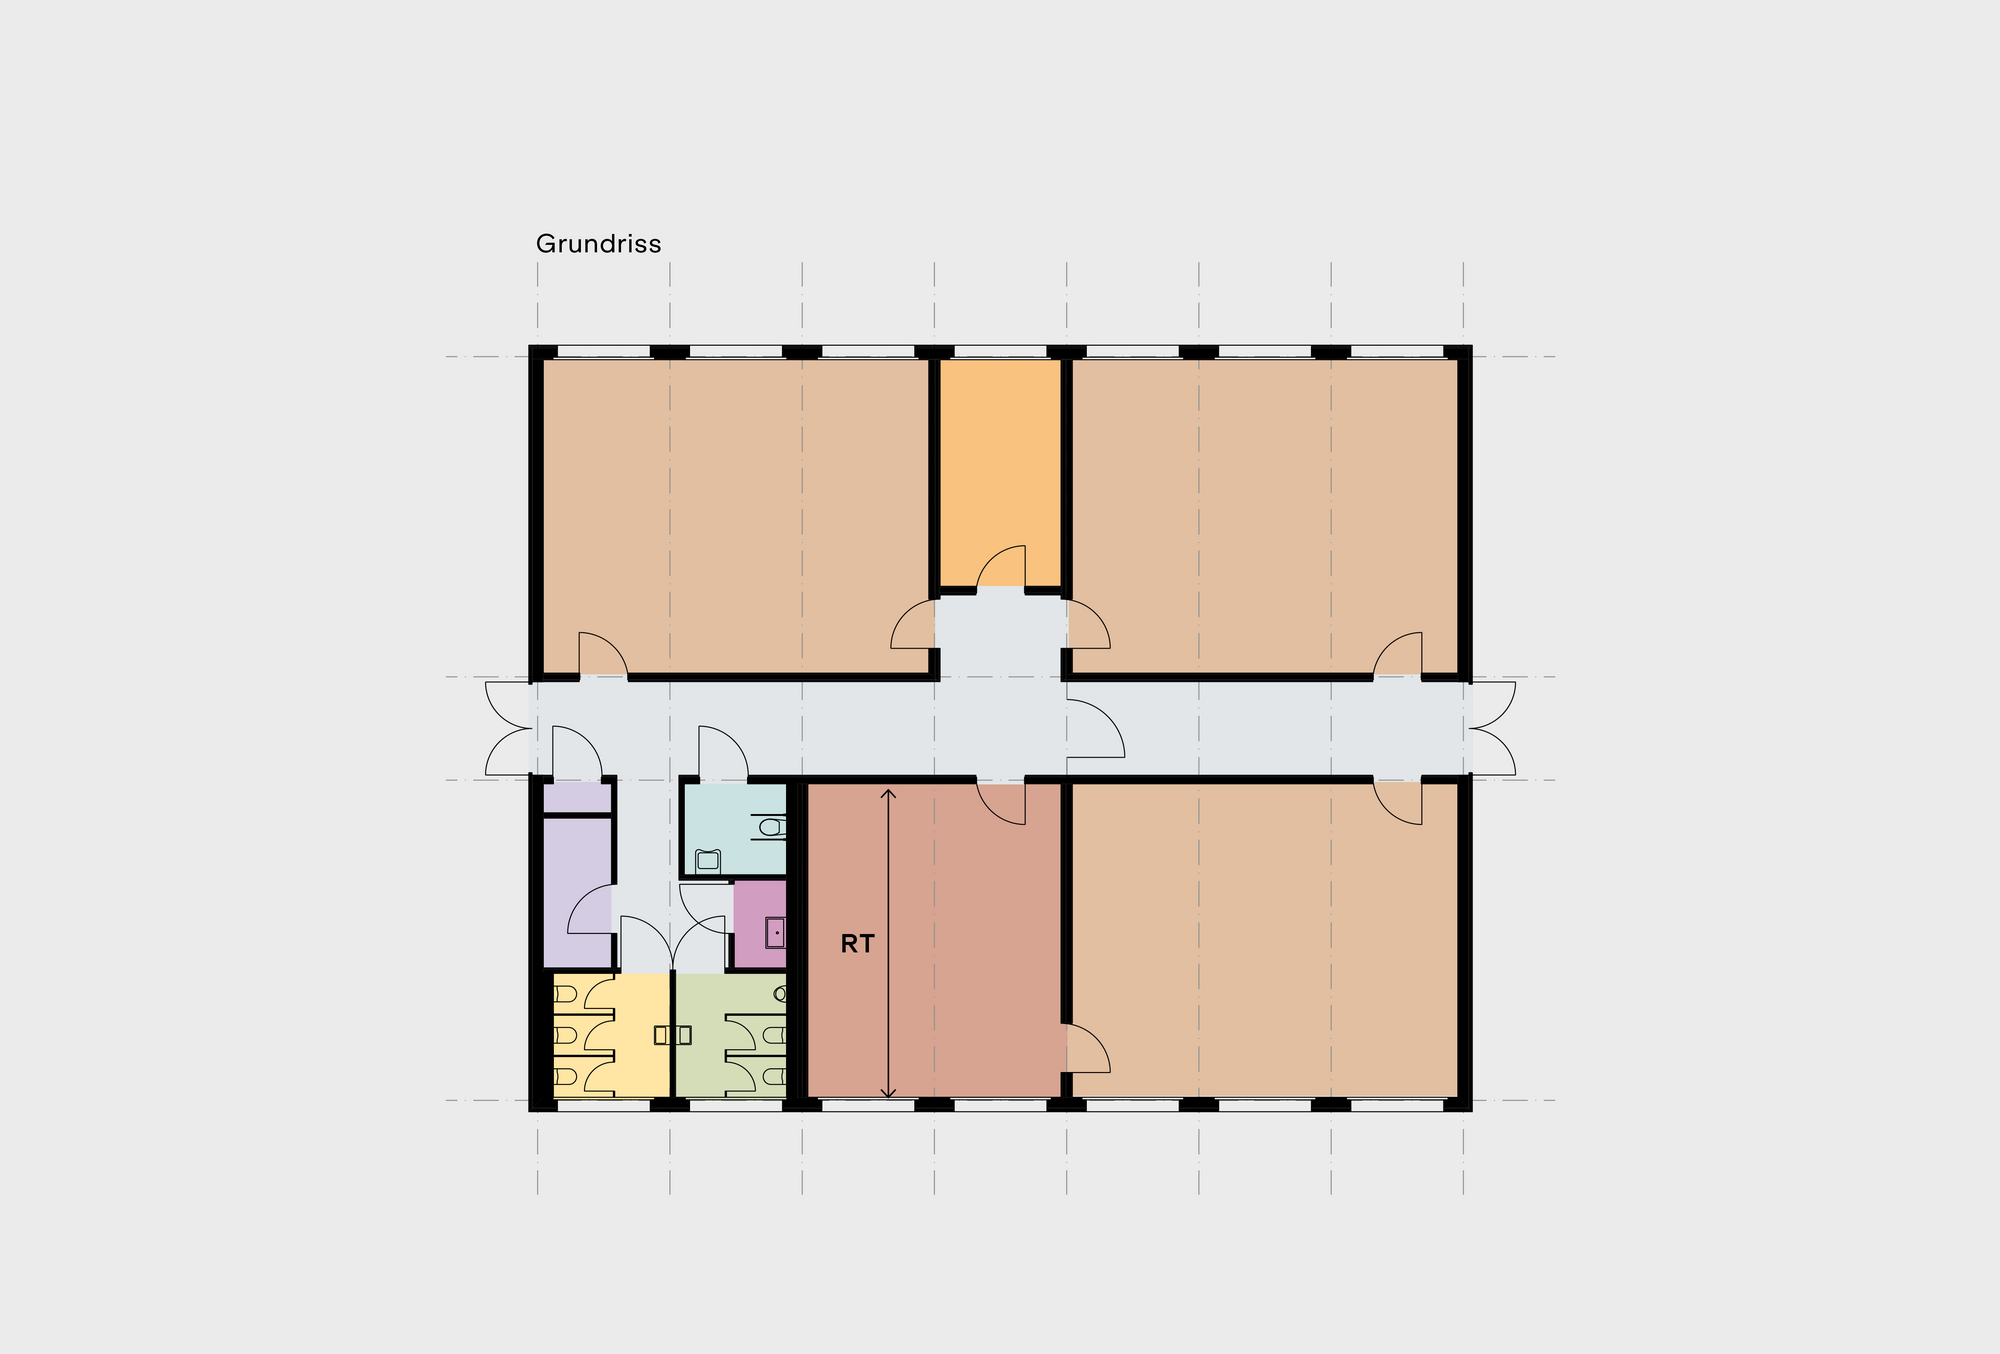 Plan du petit modèle de base avec des salles fonctionnelles en construction modulaire en bois